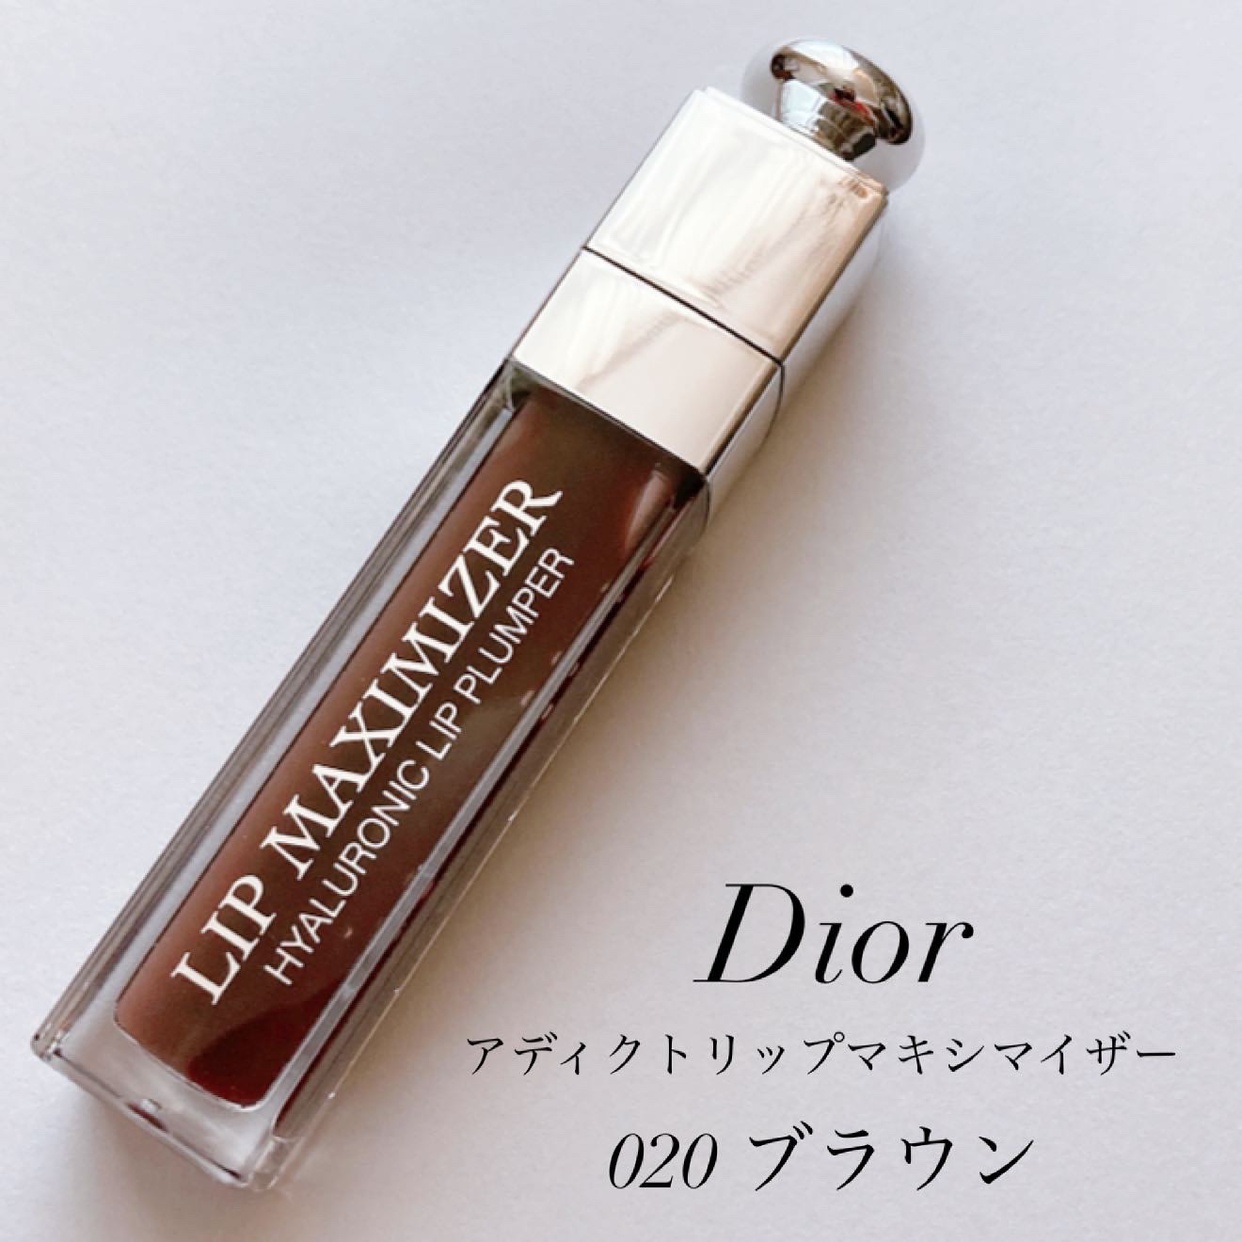 Dior(ディオール) アディクト リップ マキシマイザーを使ったyunaさんのクチコミ画像2